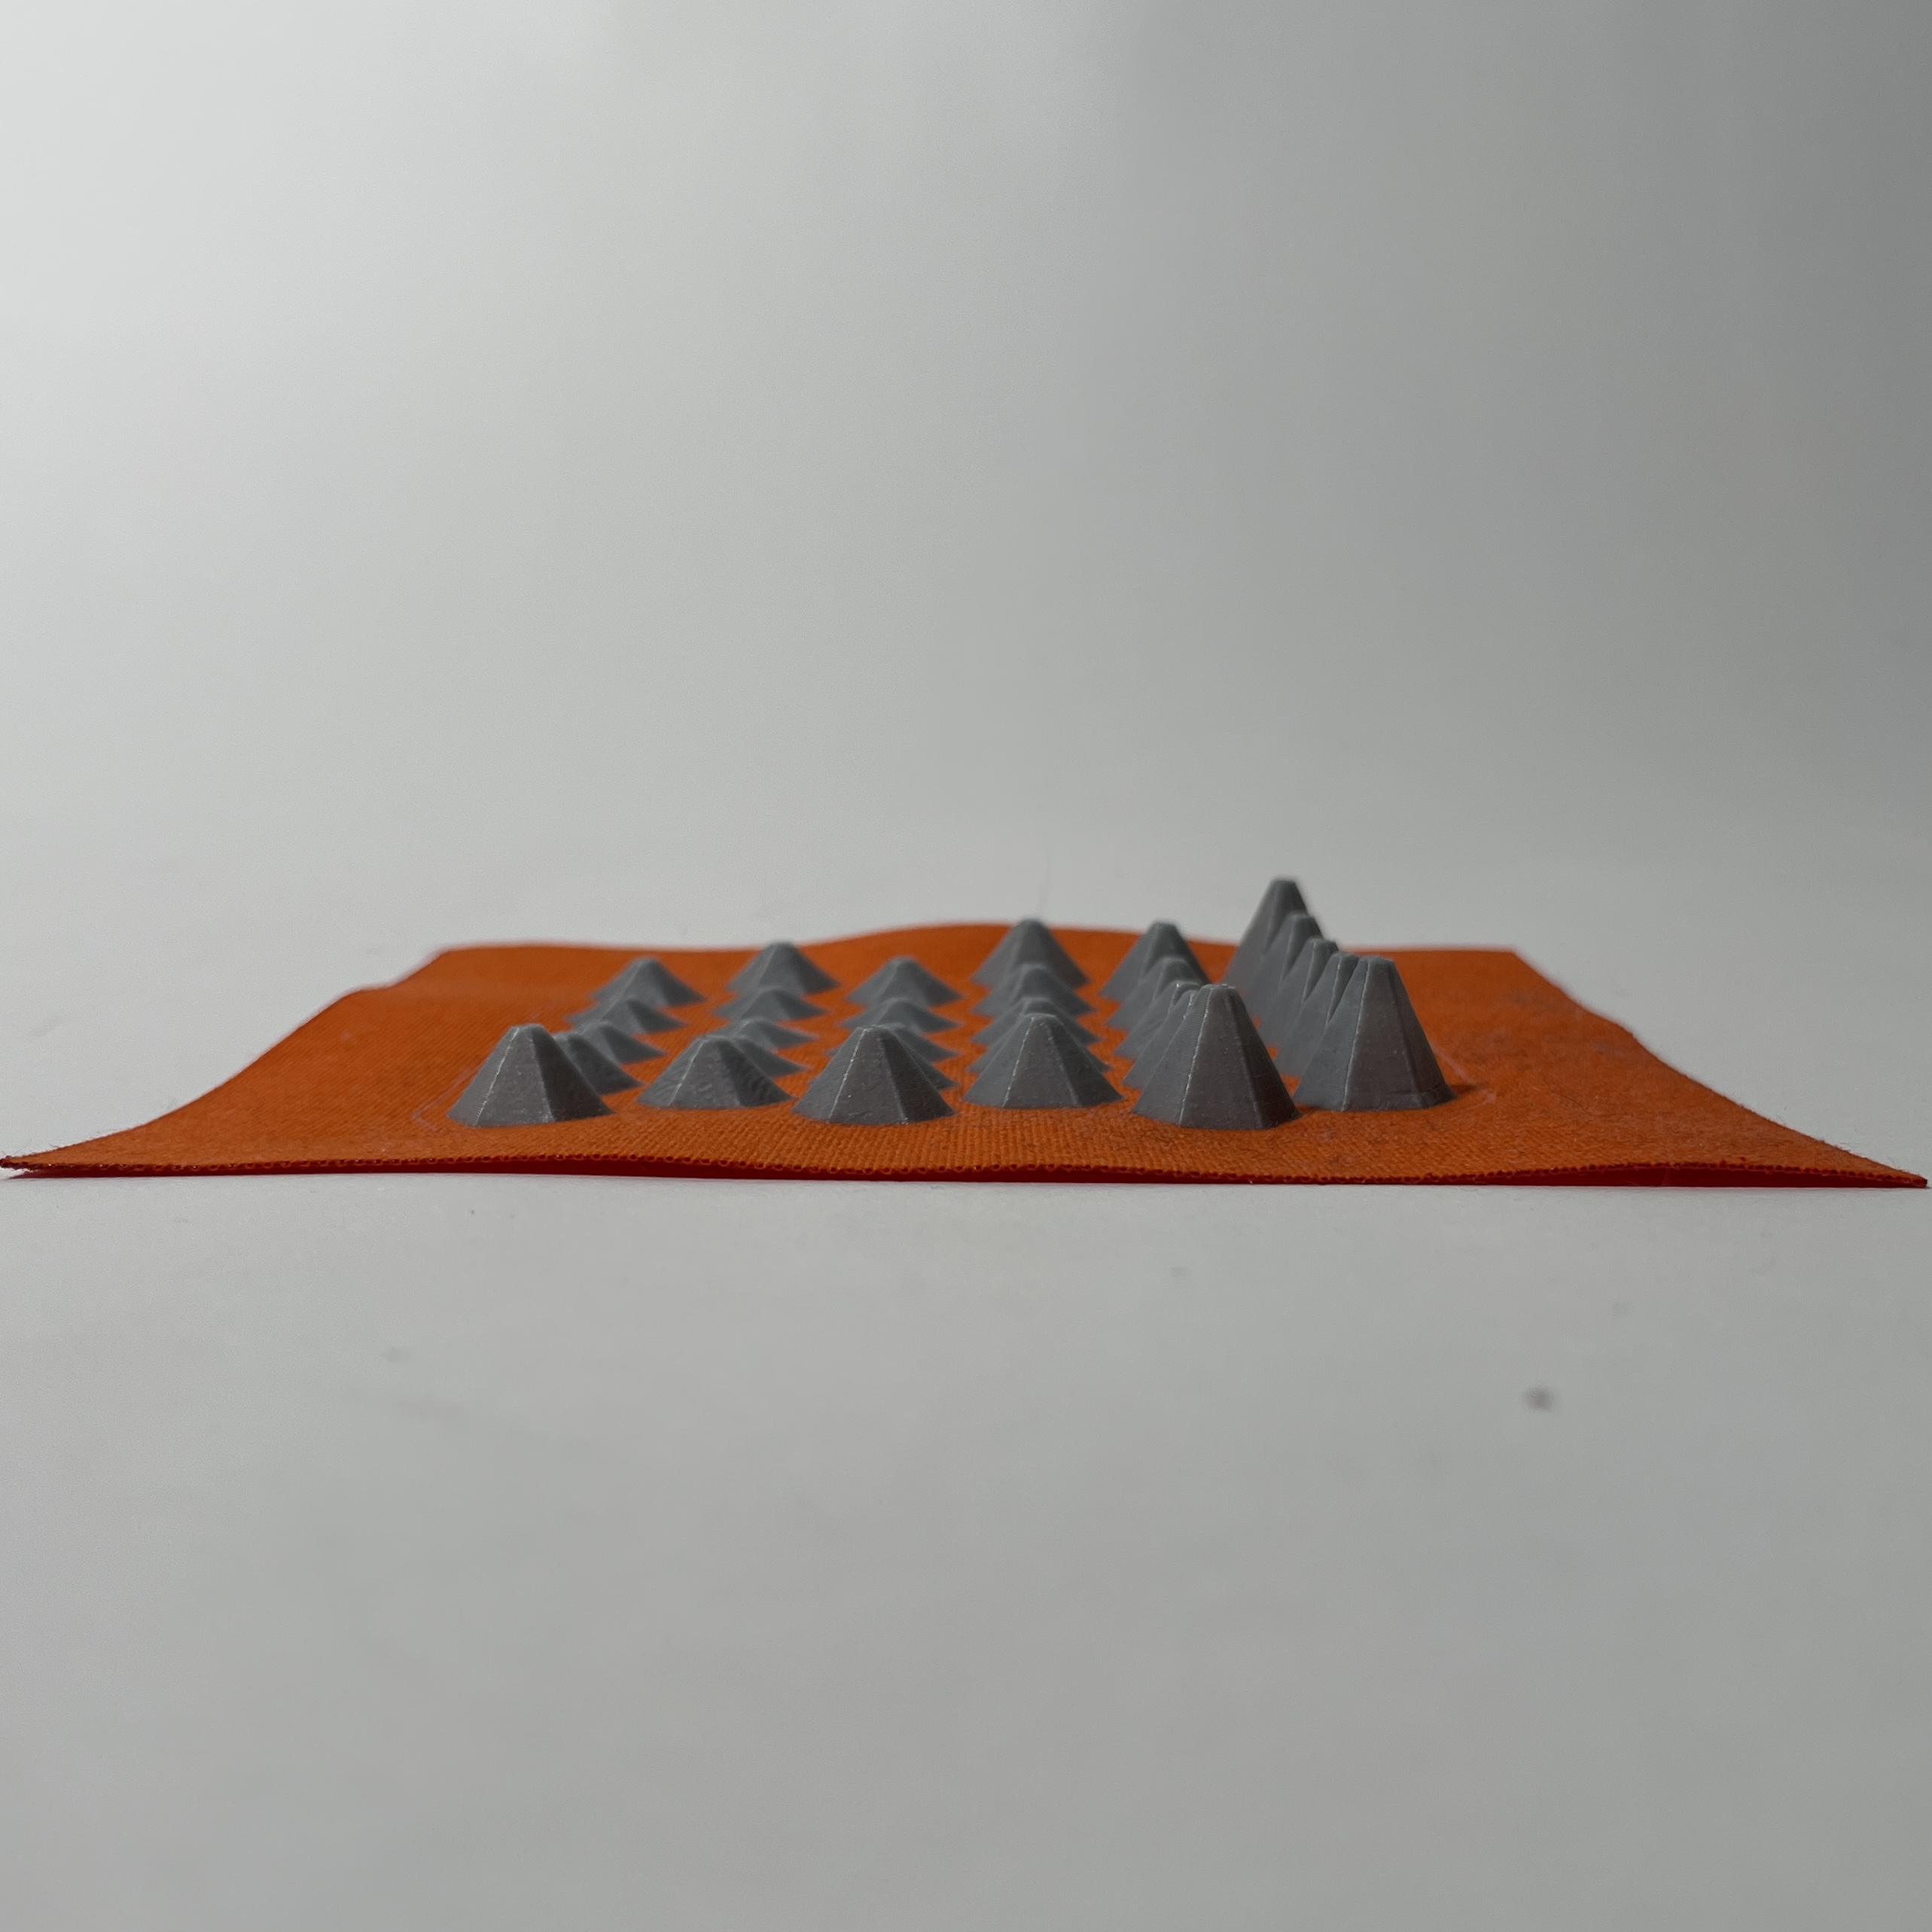 Week_03_3D printed model